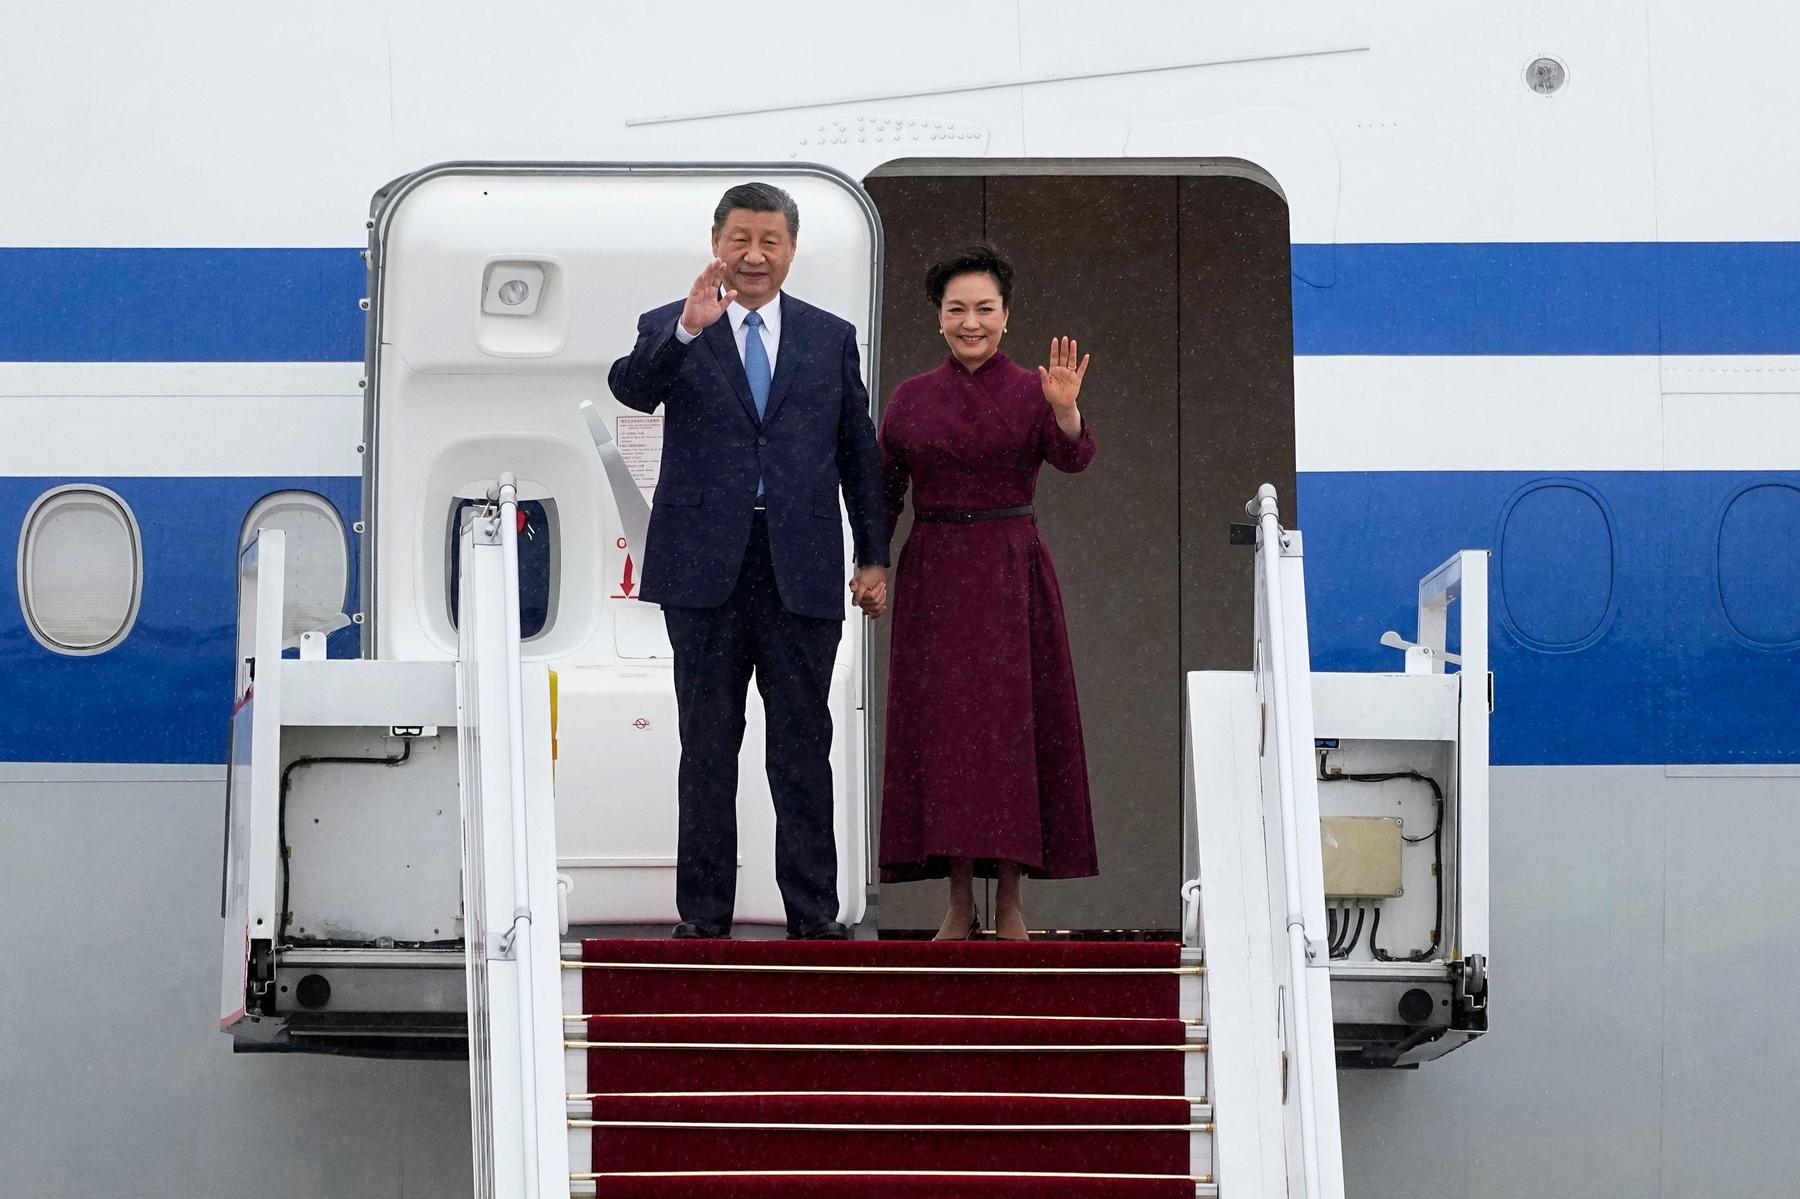 chinas staatschef xi in europa: eu soll kein „vasall der usa“ werden